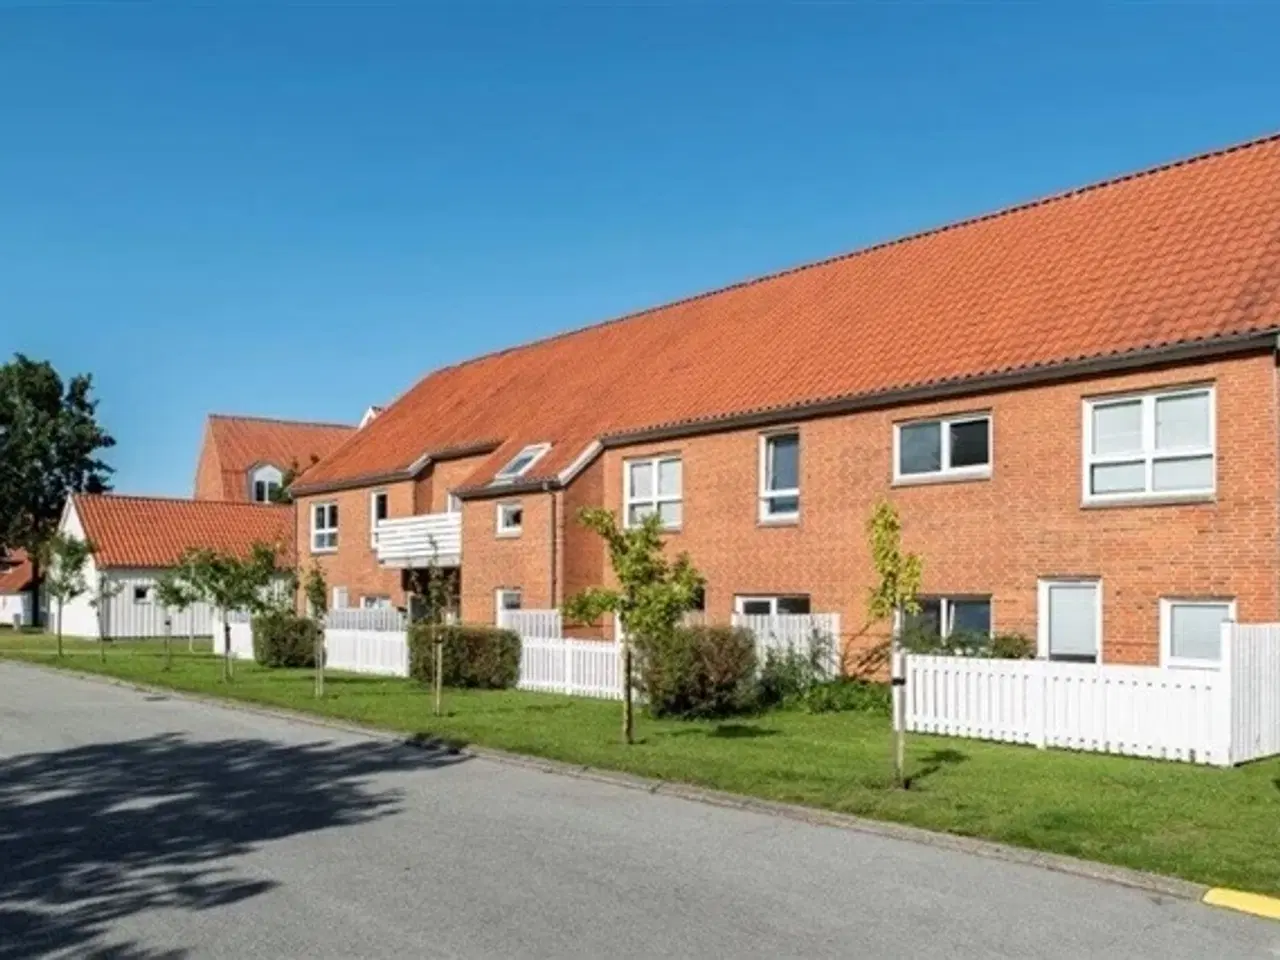 Billede 1 - 3 værelser for 5.823 kr. pr. måned, Frederikshavn, Nordjylland